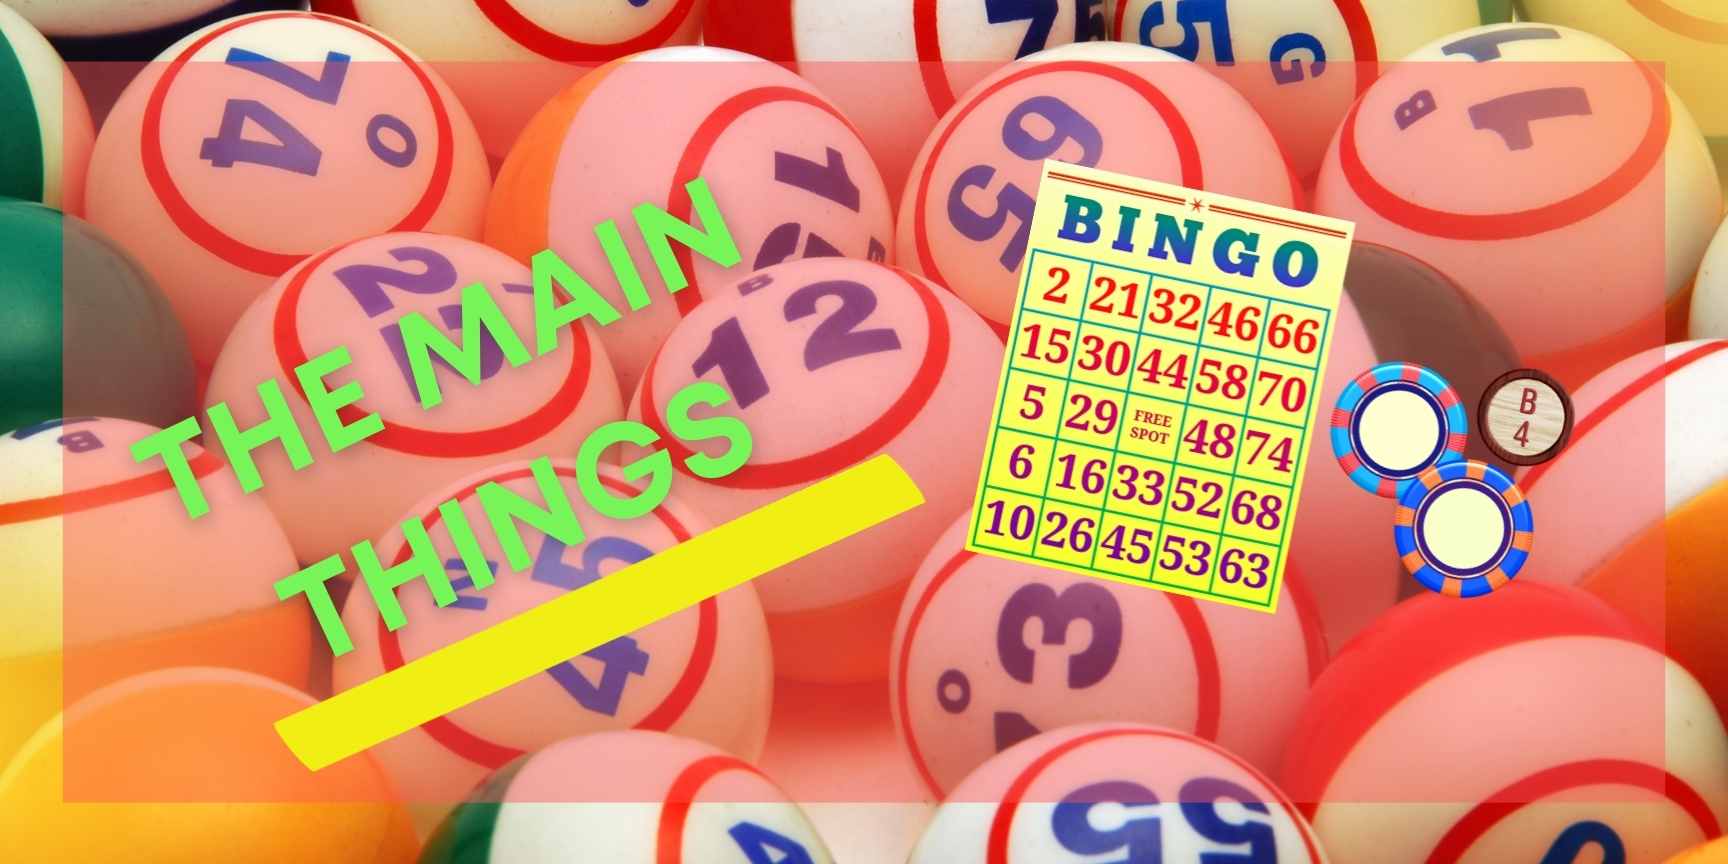 bingo main things